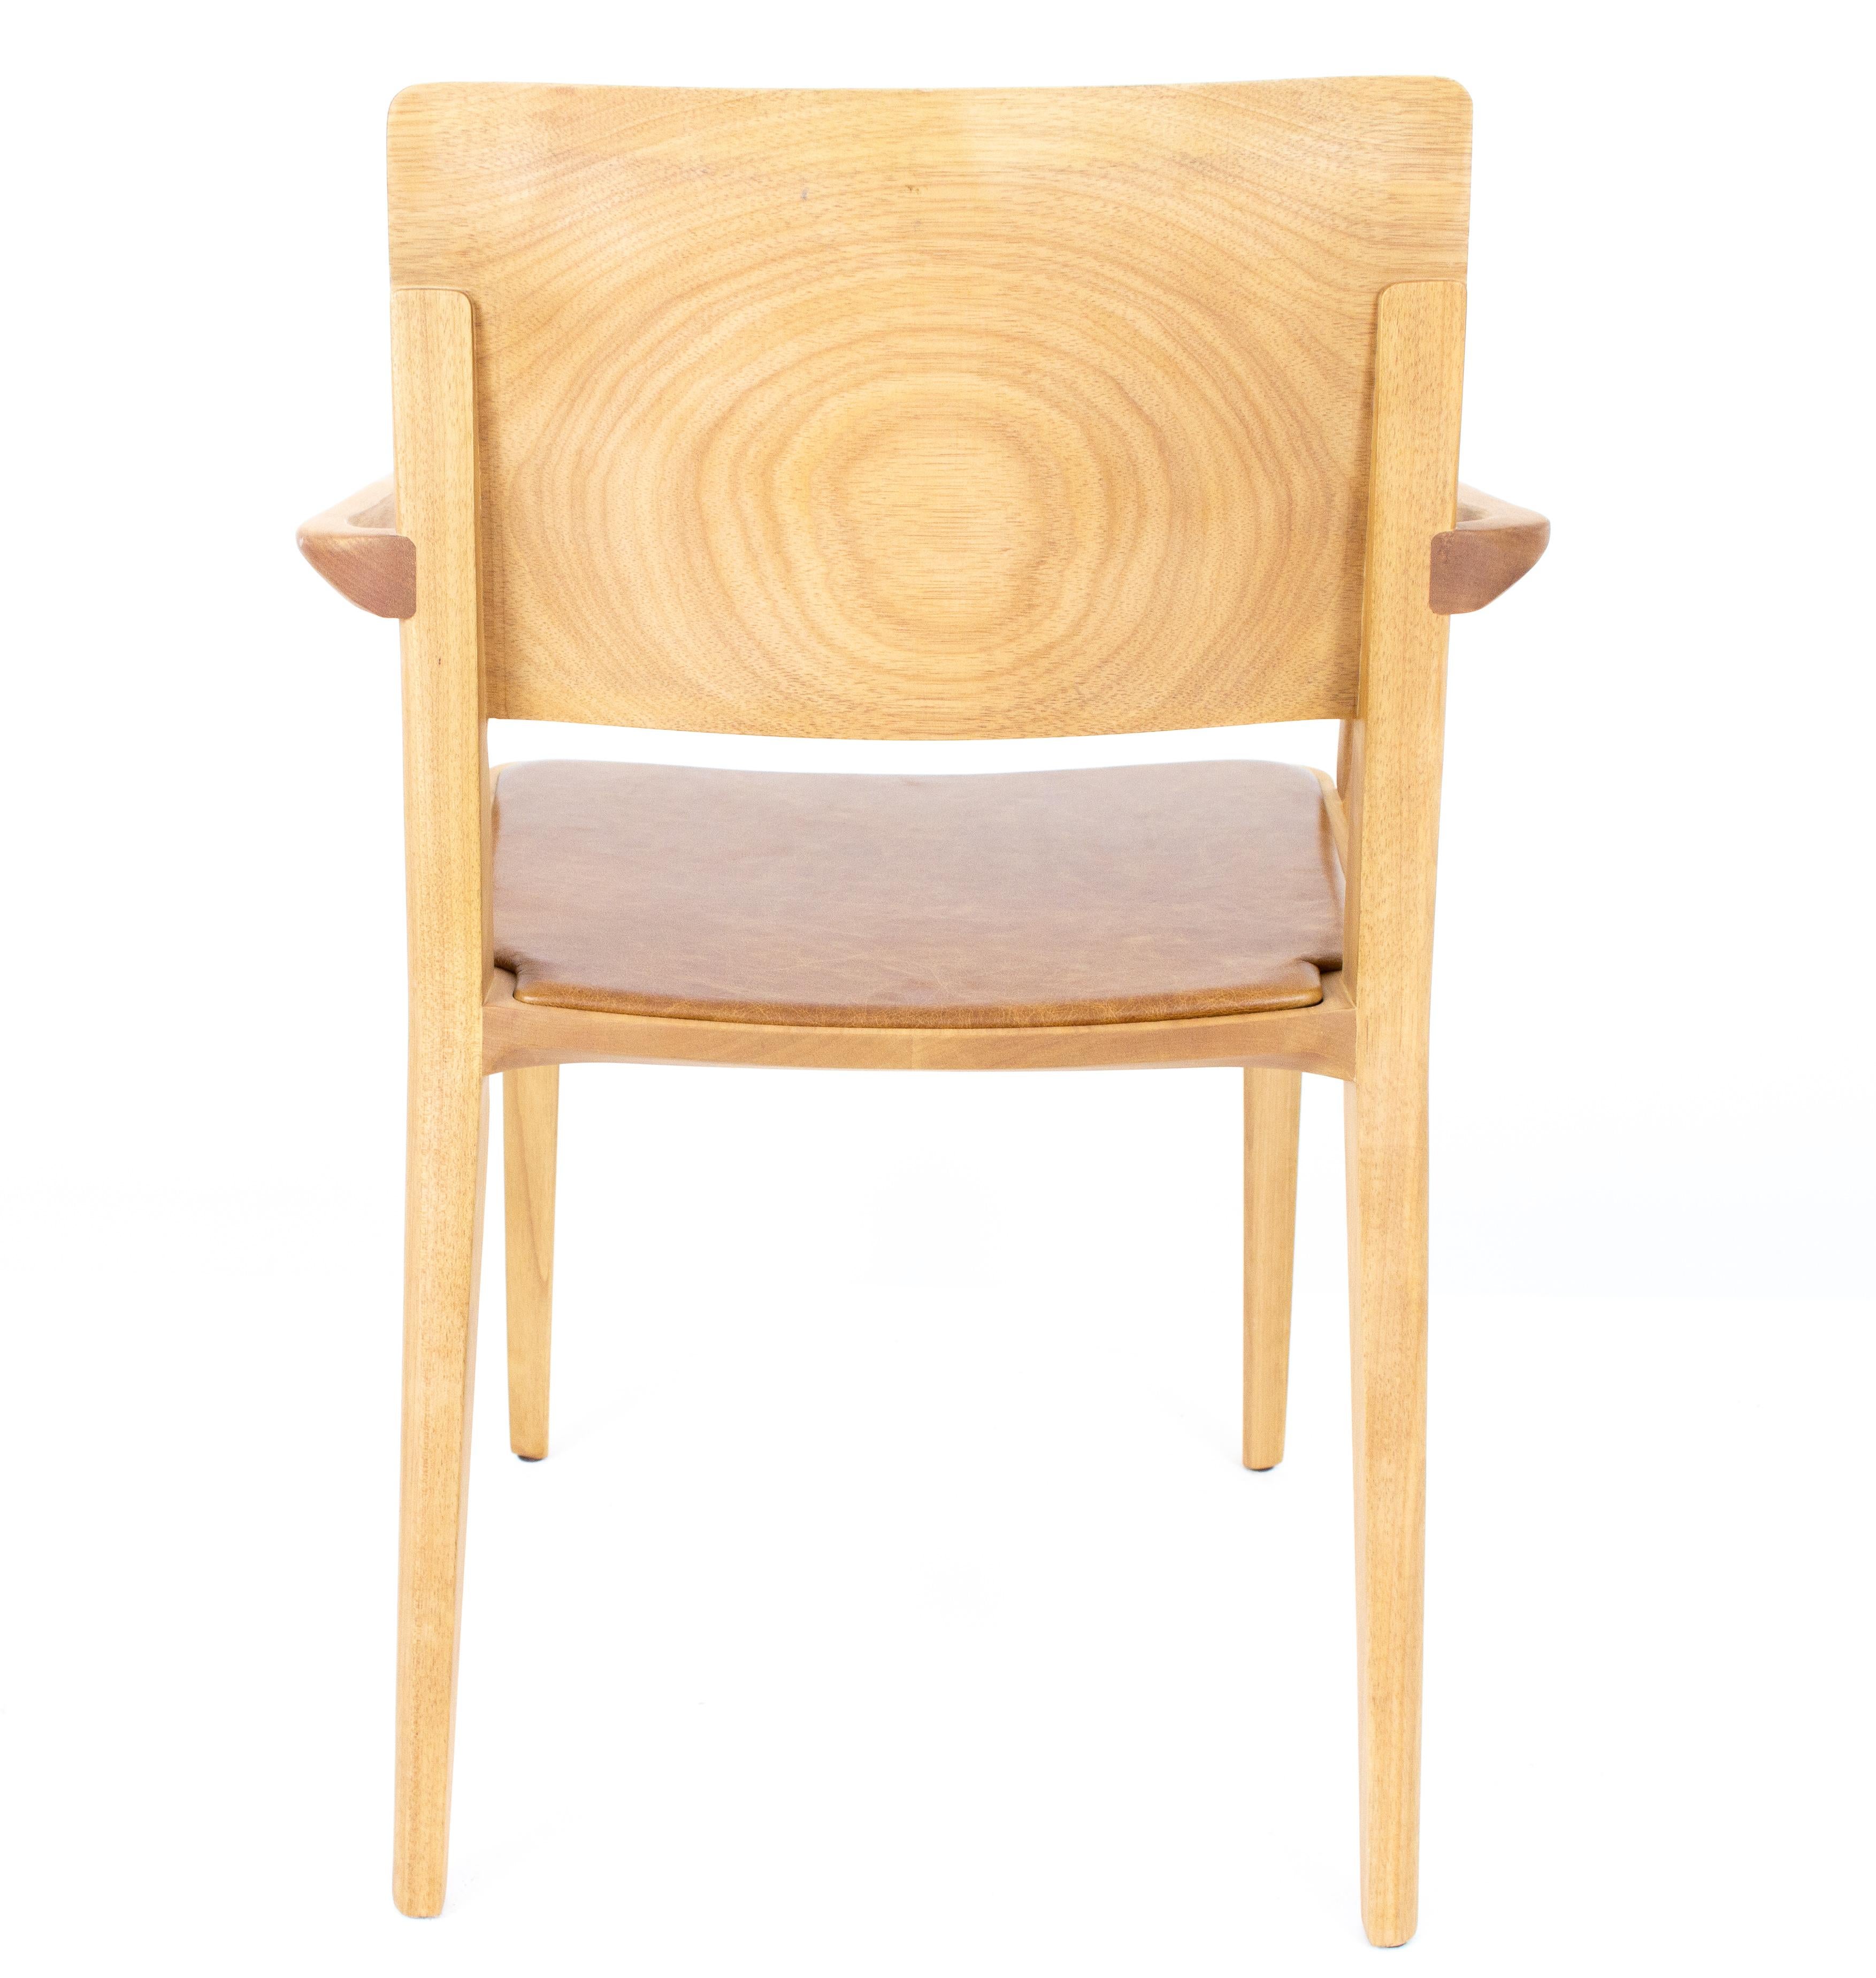 Kollektion Evo Chair.

Unsere EVO-Kollektion basiert auf der harmonischen Verschmelzung von geometrischen Formen und der modernen Interpretation der Archetypen des Holzes. 

Alle Elemente, aus denen sich der Stuhl zusammensetzt, werden präzise